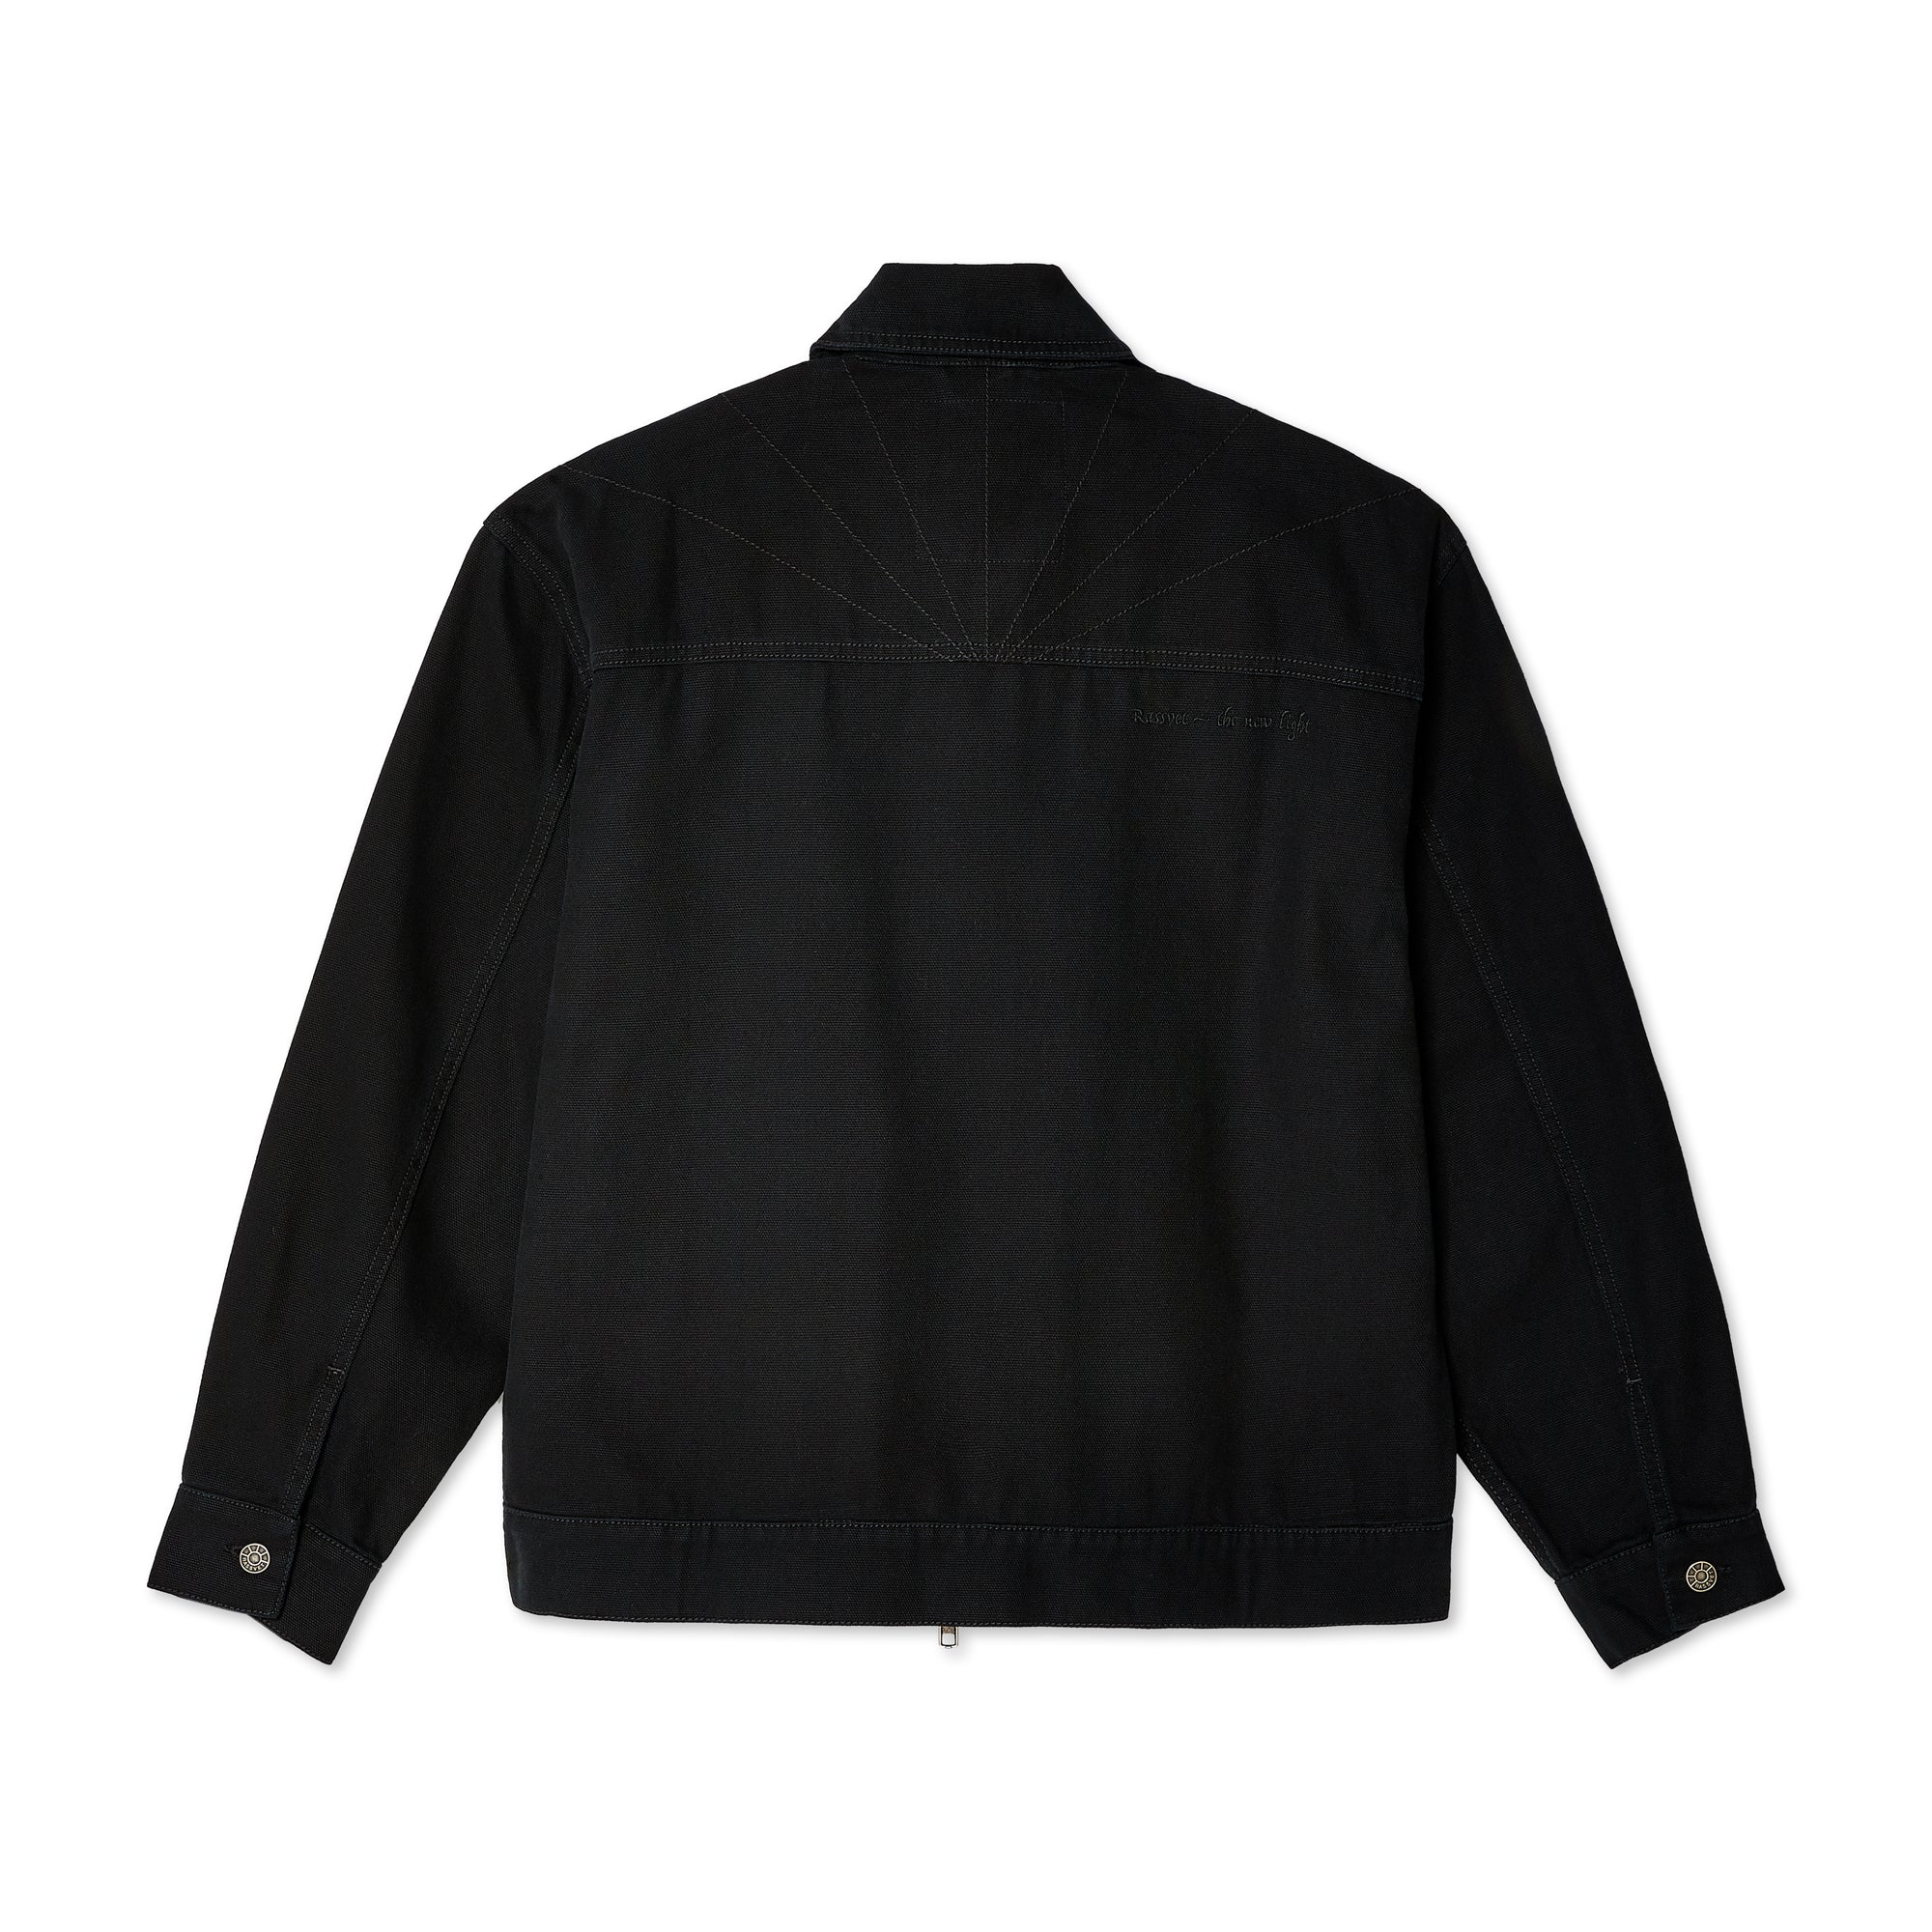 Rassvet - Men's The New Light Zipped Jacket - (Black) view 2